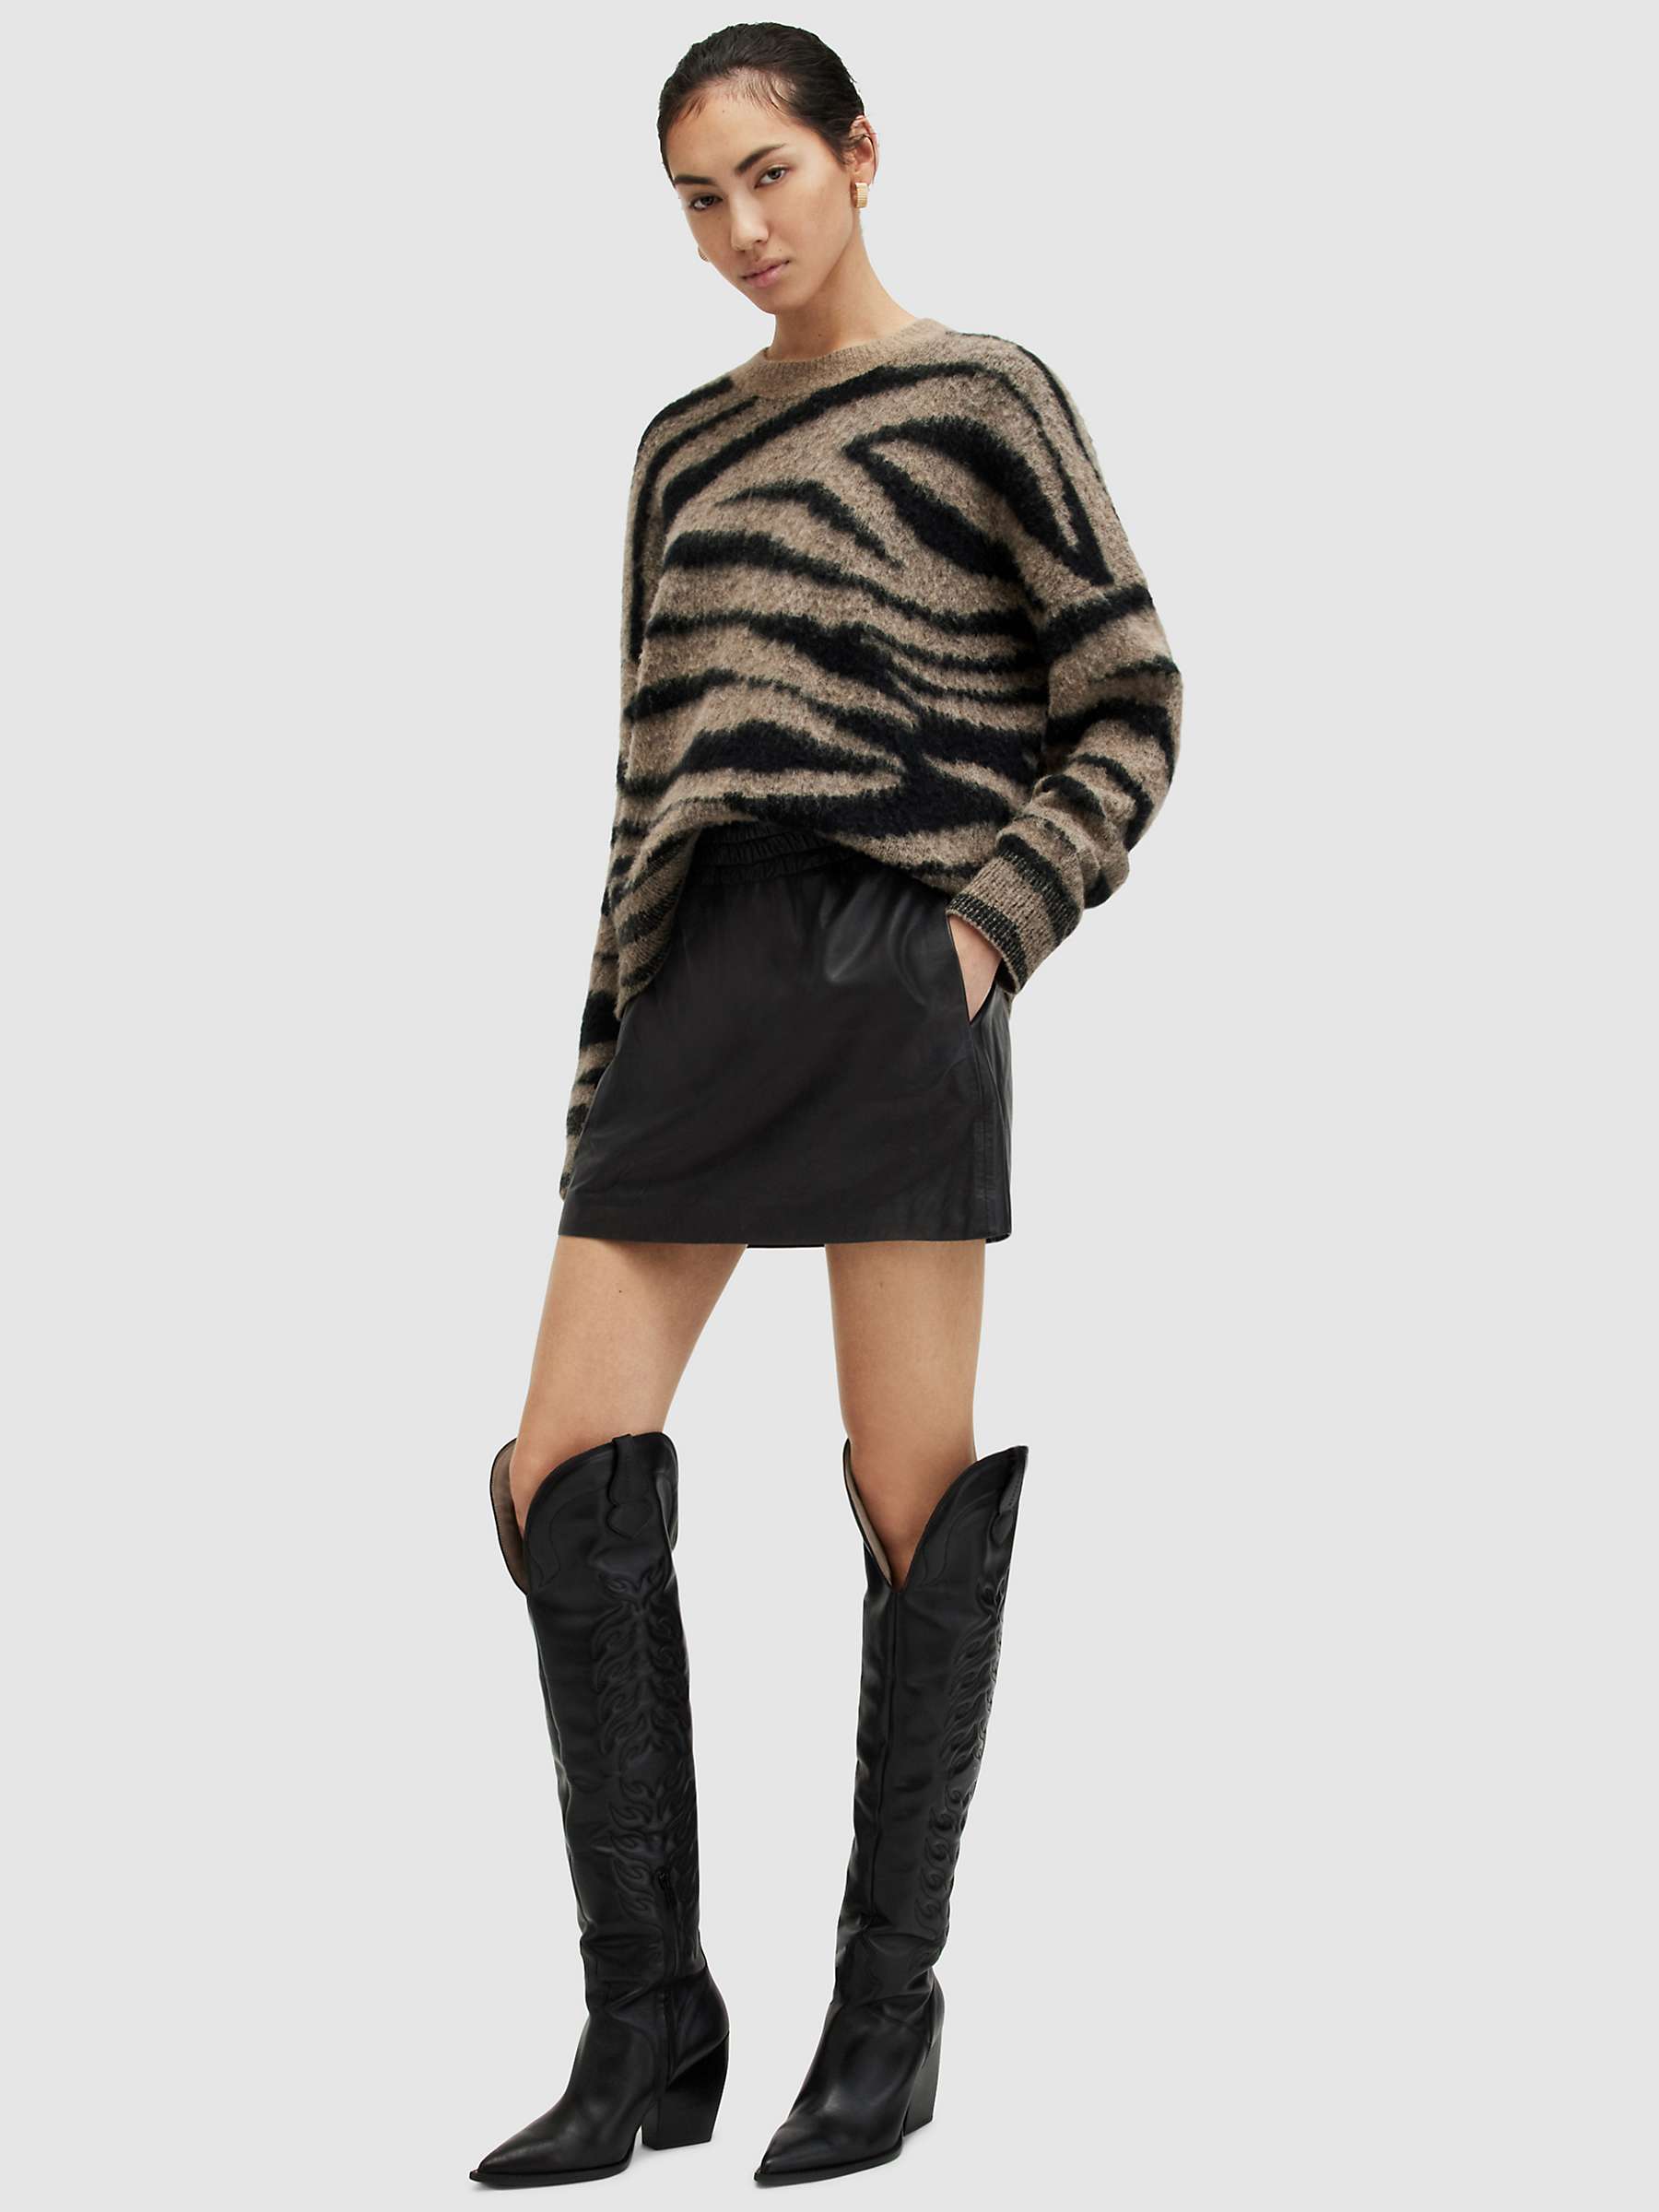 Buy AllSaints Shana Leather Mini Skirt, Black Online at johnlewis.com